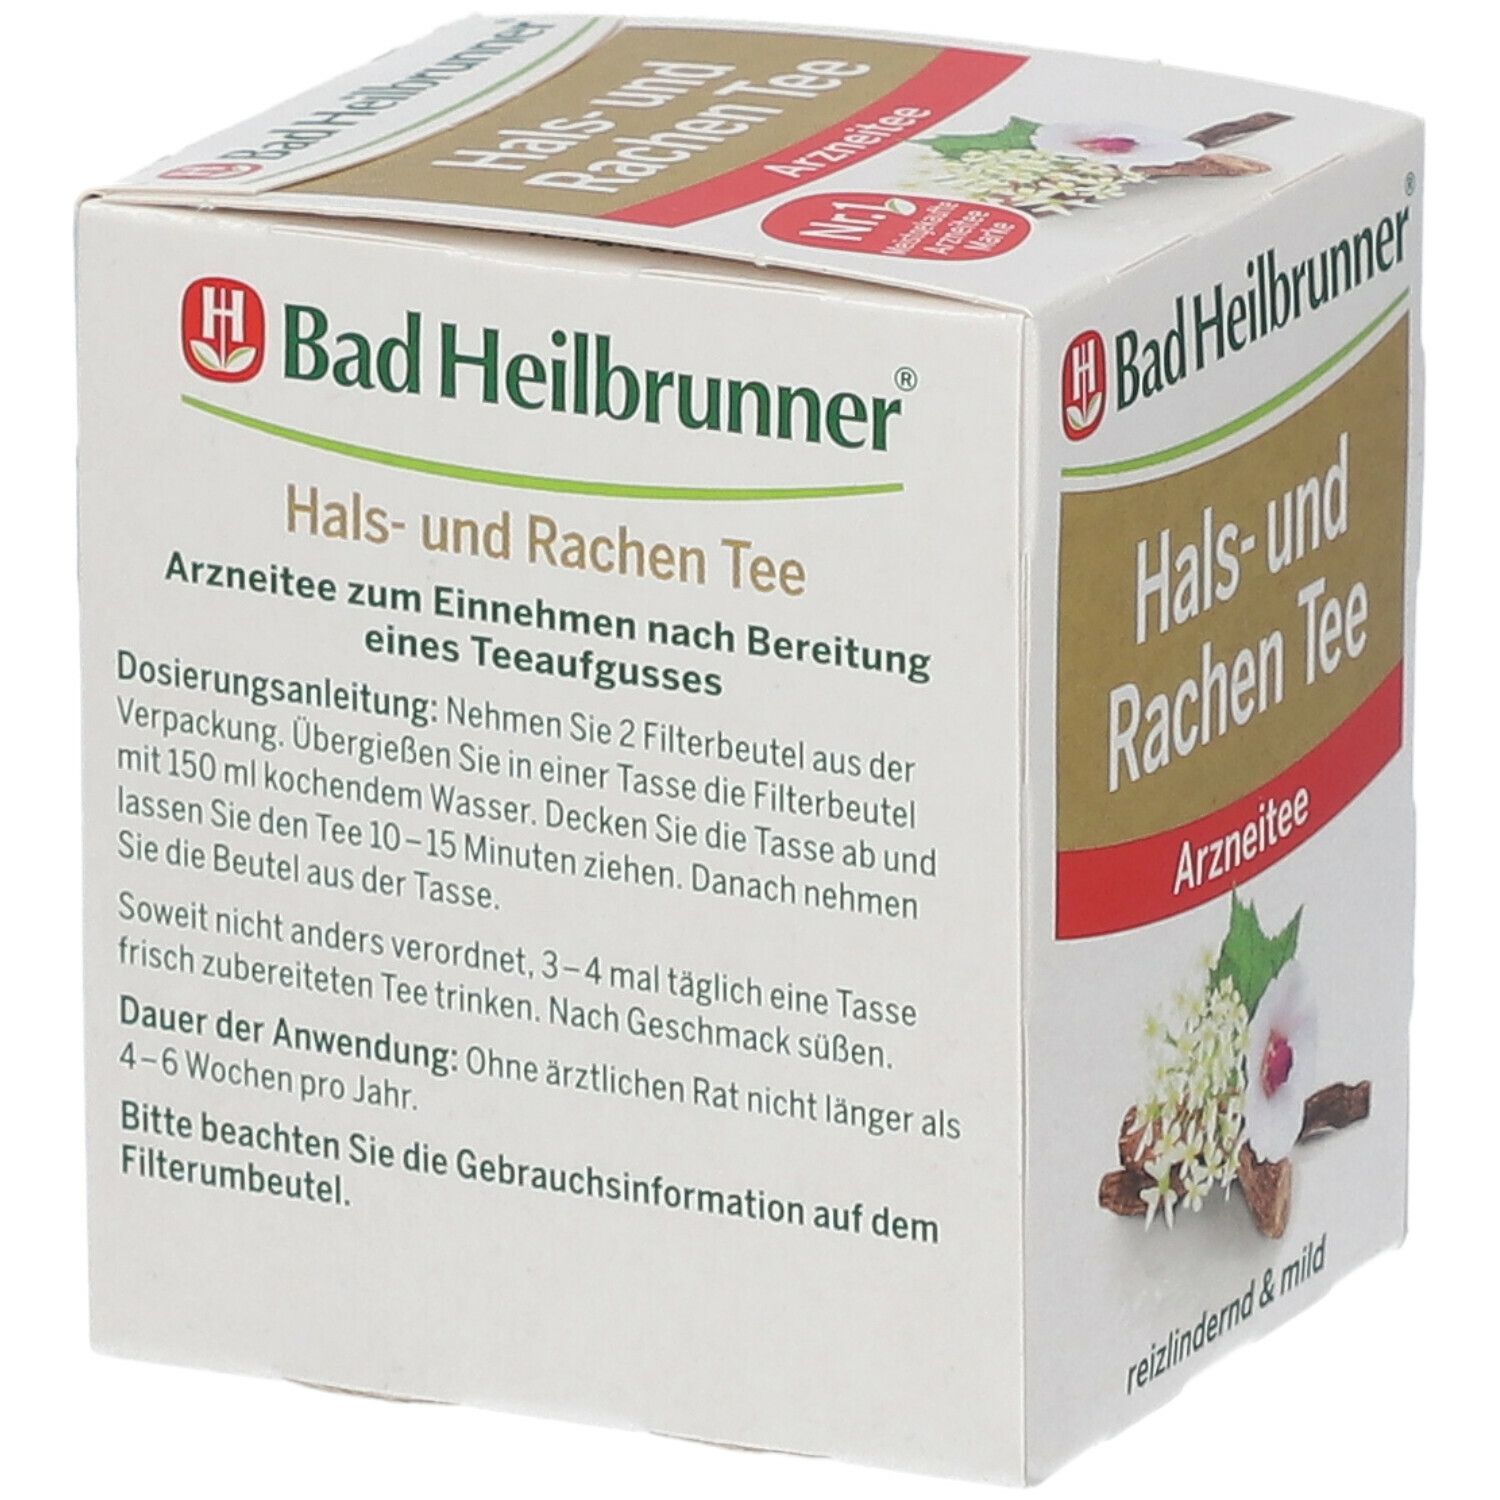 Bad Heilbrunner® Hals- und Rachen Tee